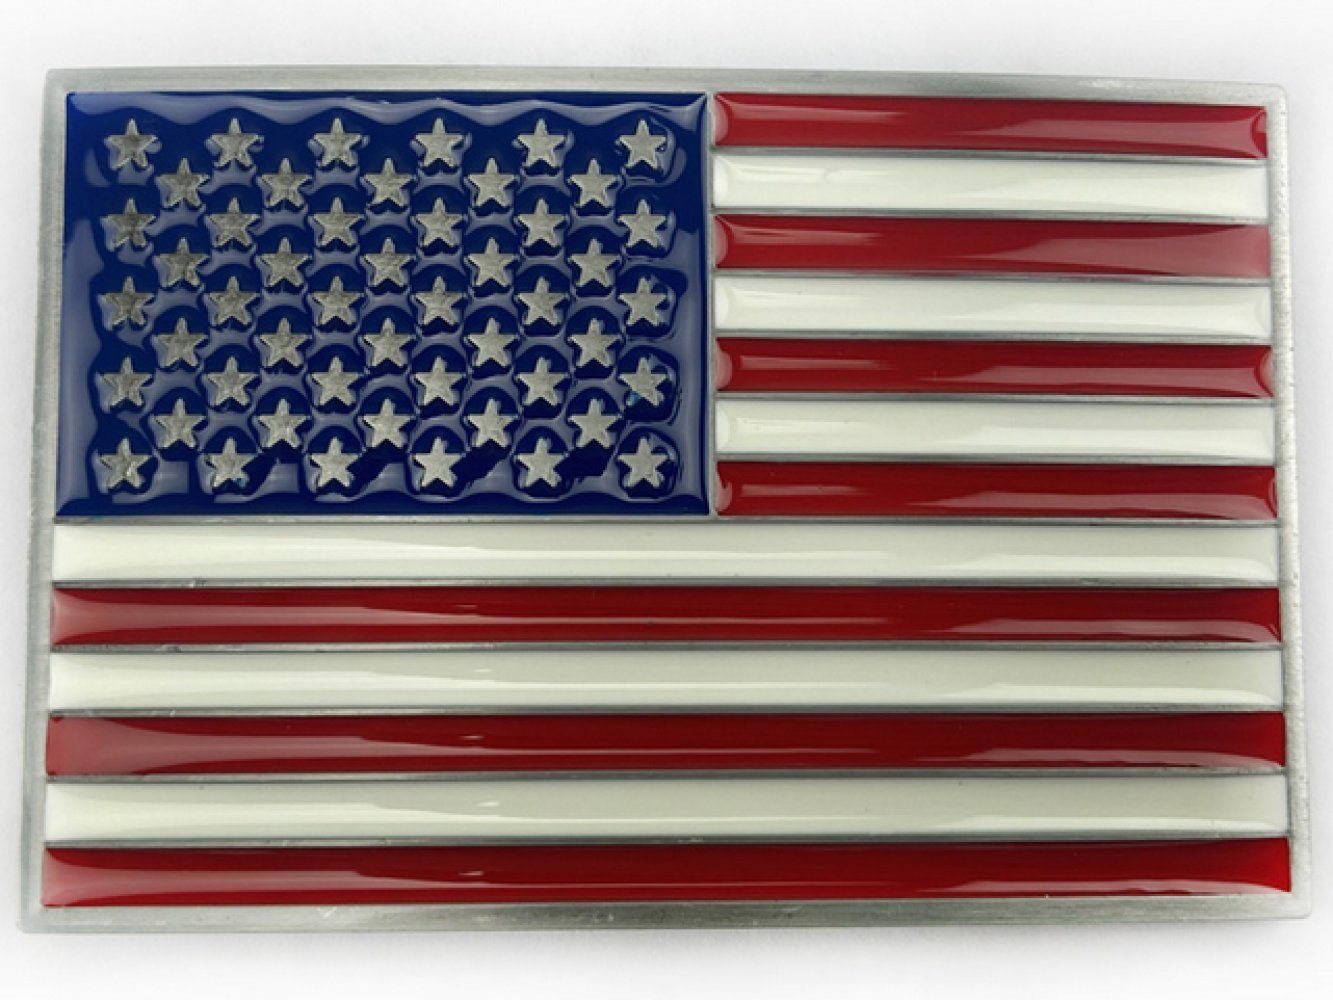 Ware aus aller Welt Gürtelschnalle USA Fahne US Banner Flagge Gürtelschließe Wechselschnalle Buckle